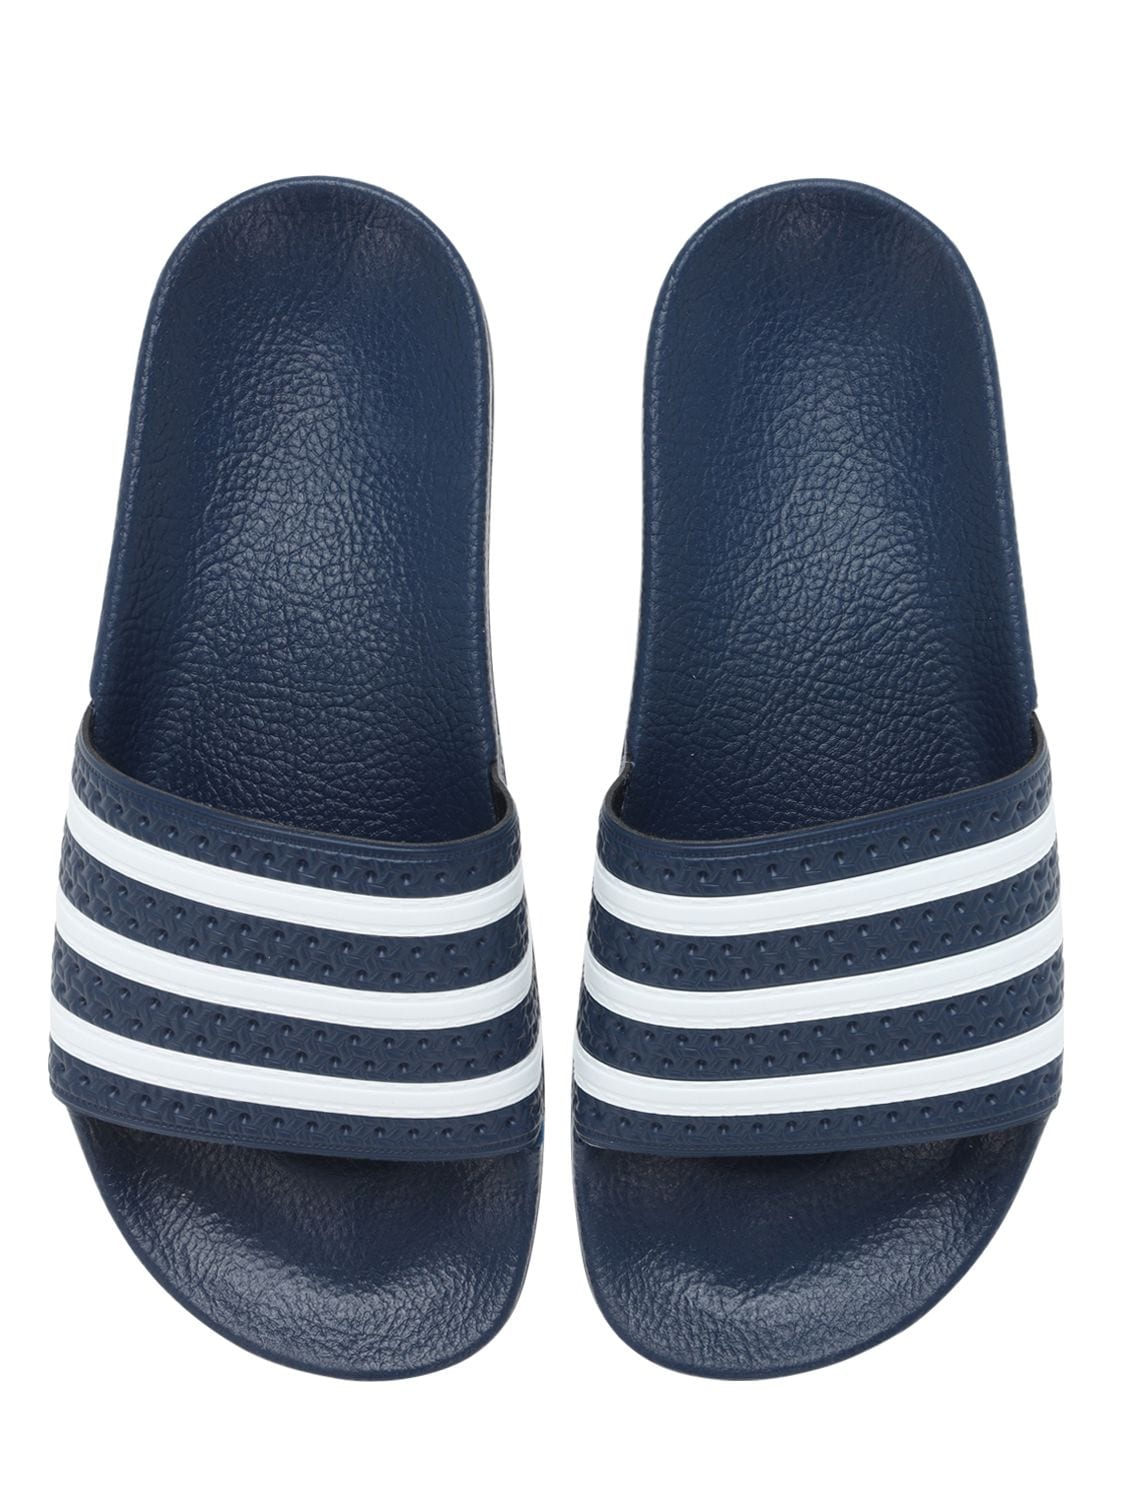 Adidas Originals Adidas Women's Originals Adilette Aqua Slide Sandals ...